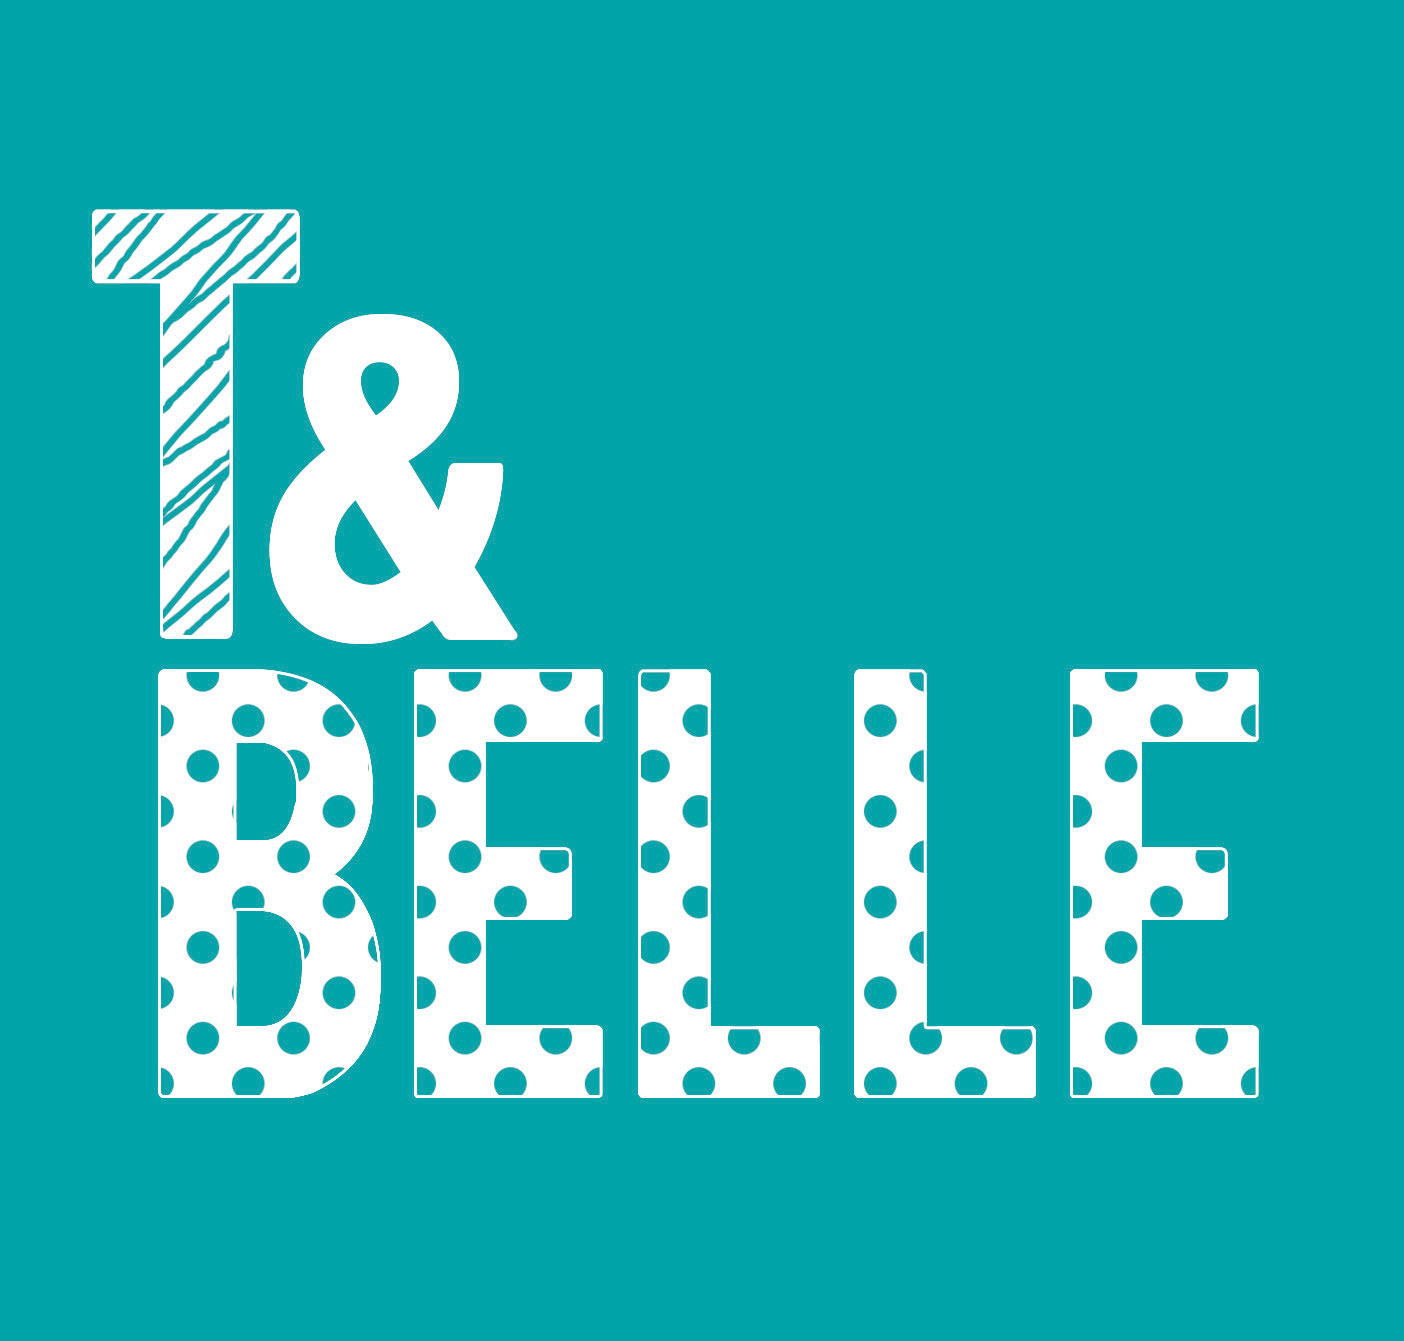 T & Belle's logo